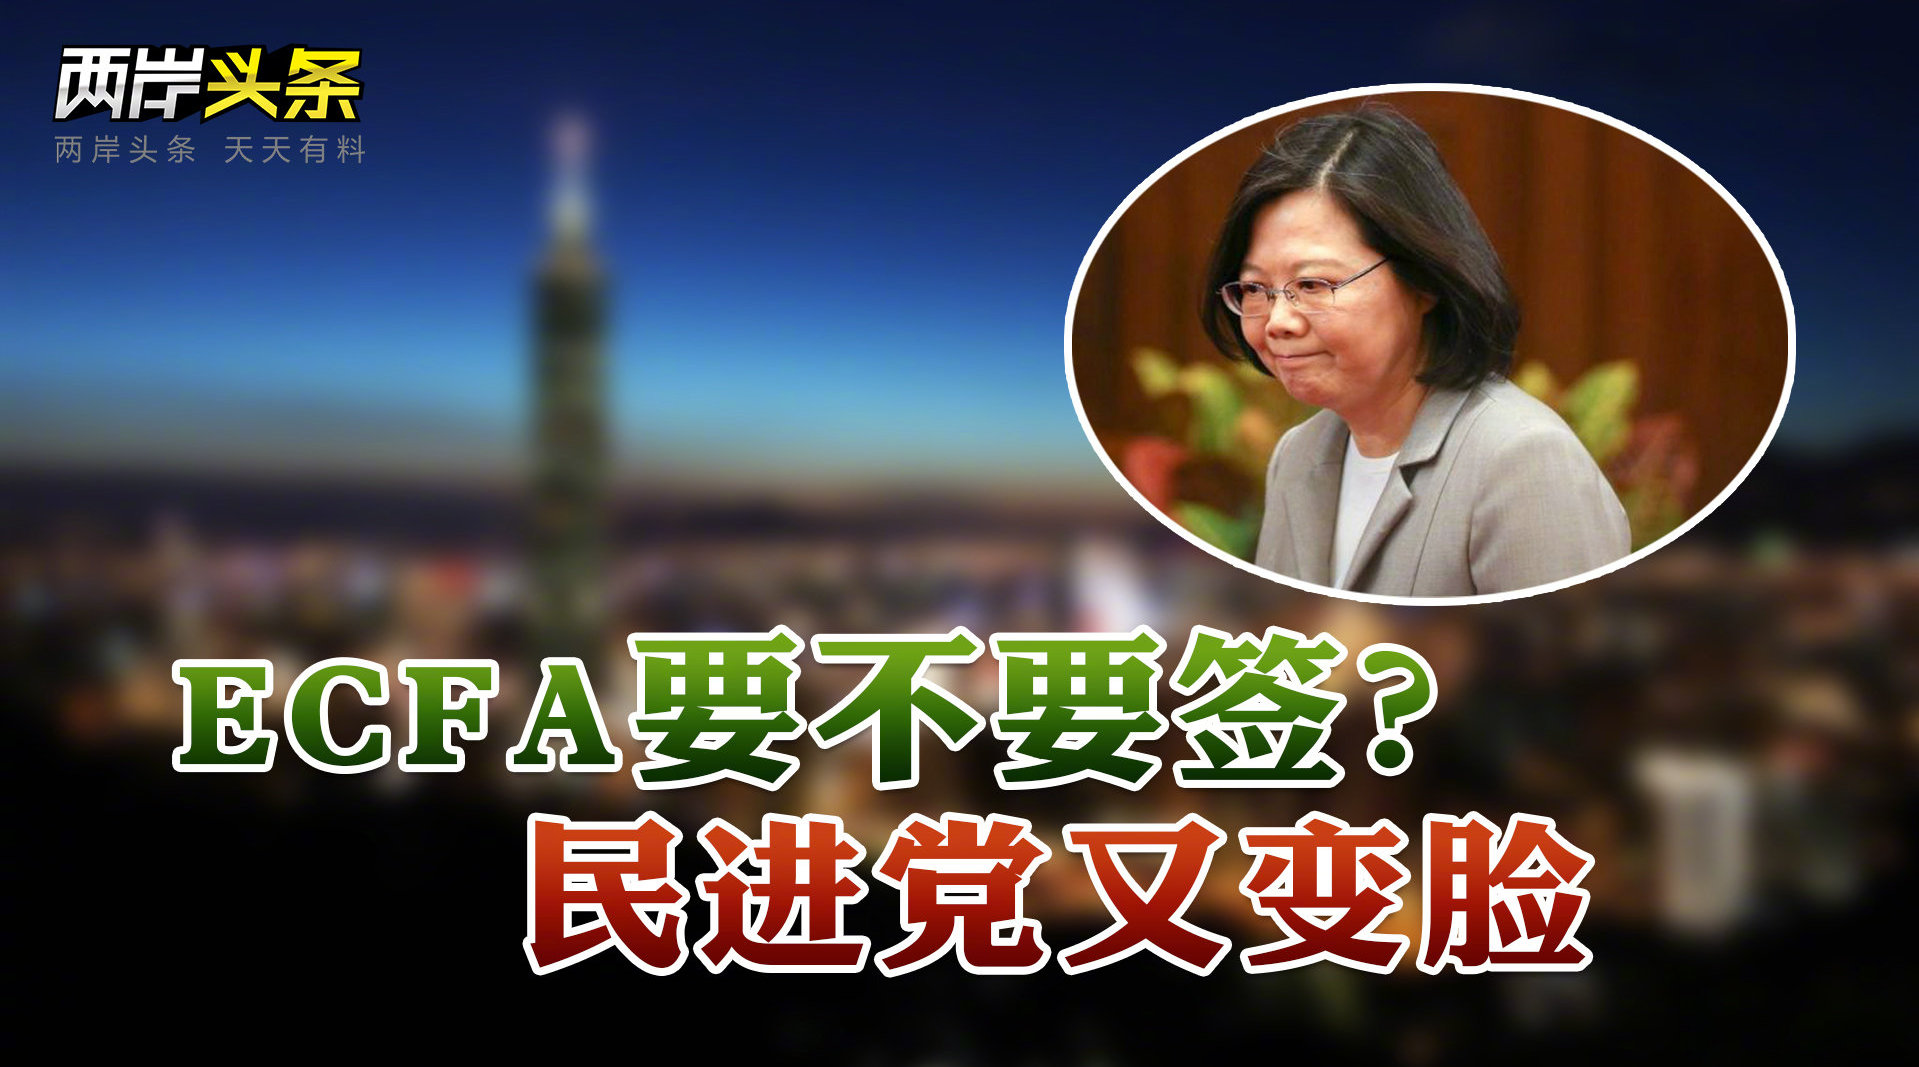 #民进党对ECFA态度急转弯# 国民党“立院”外持续抗议 台湾经济疲弱